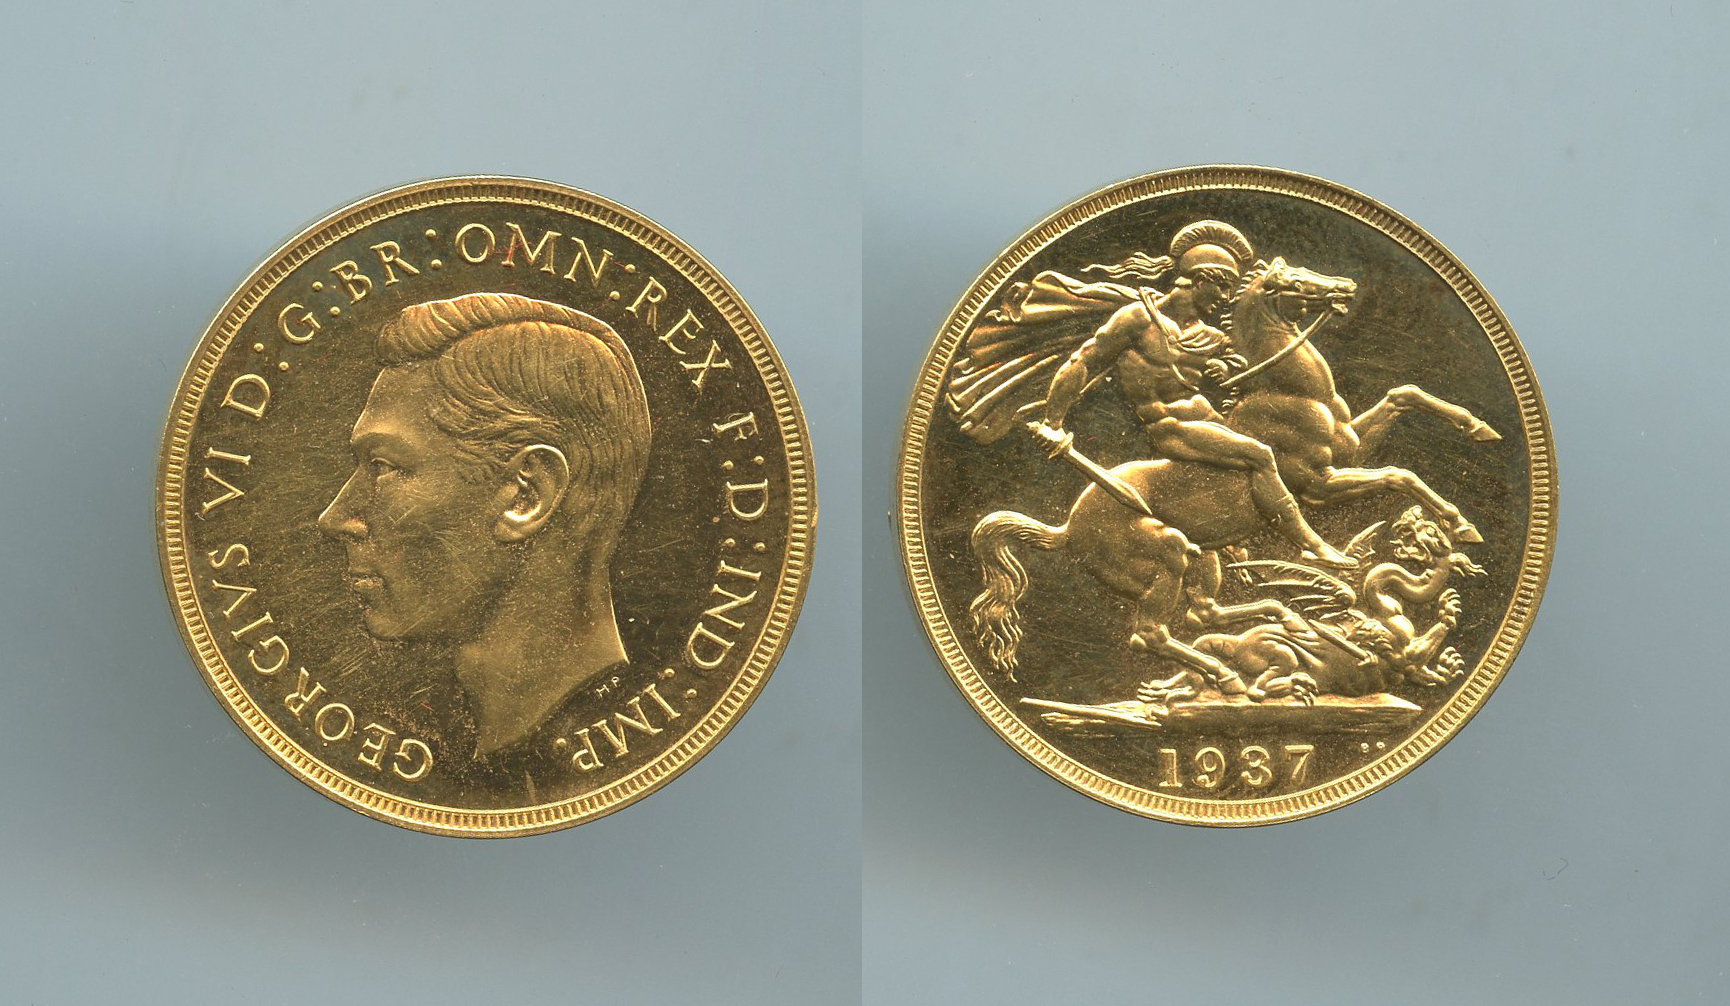 REGNO UNITO, George VI (1936-1952) 2 Pounds 1937